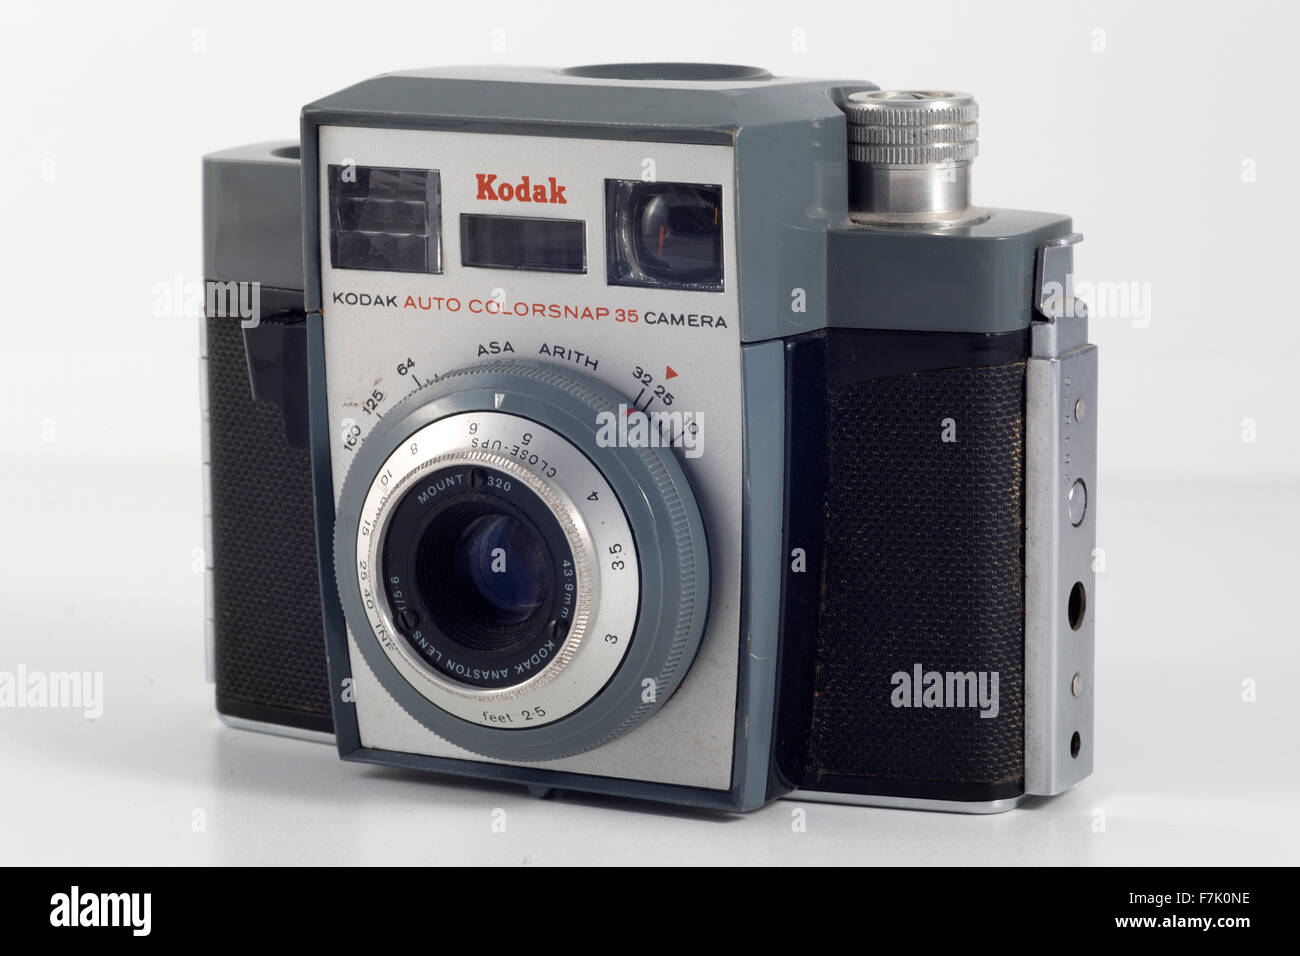 Kodak Colorsnap automatica 35 Fotocamera. Realizzato tra il 1962 e il 1964 da Kodak Ltd nel Regno Unito. 43.9mm Anaston Kodak Lens f/5.6 Foto Stock